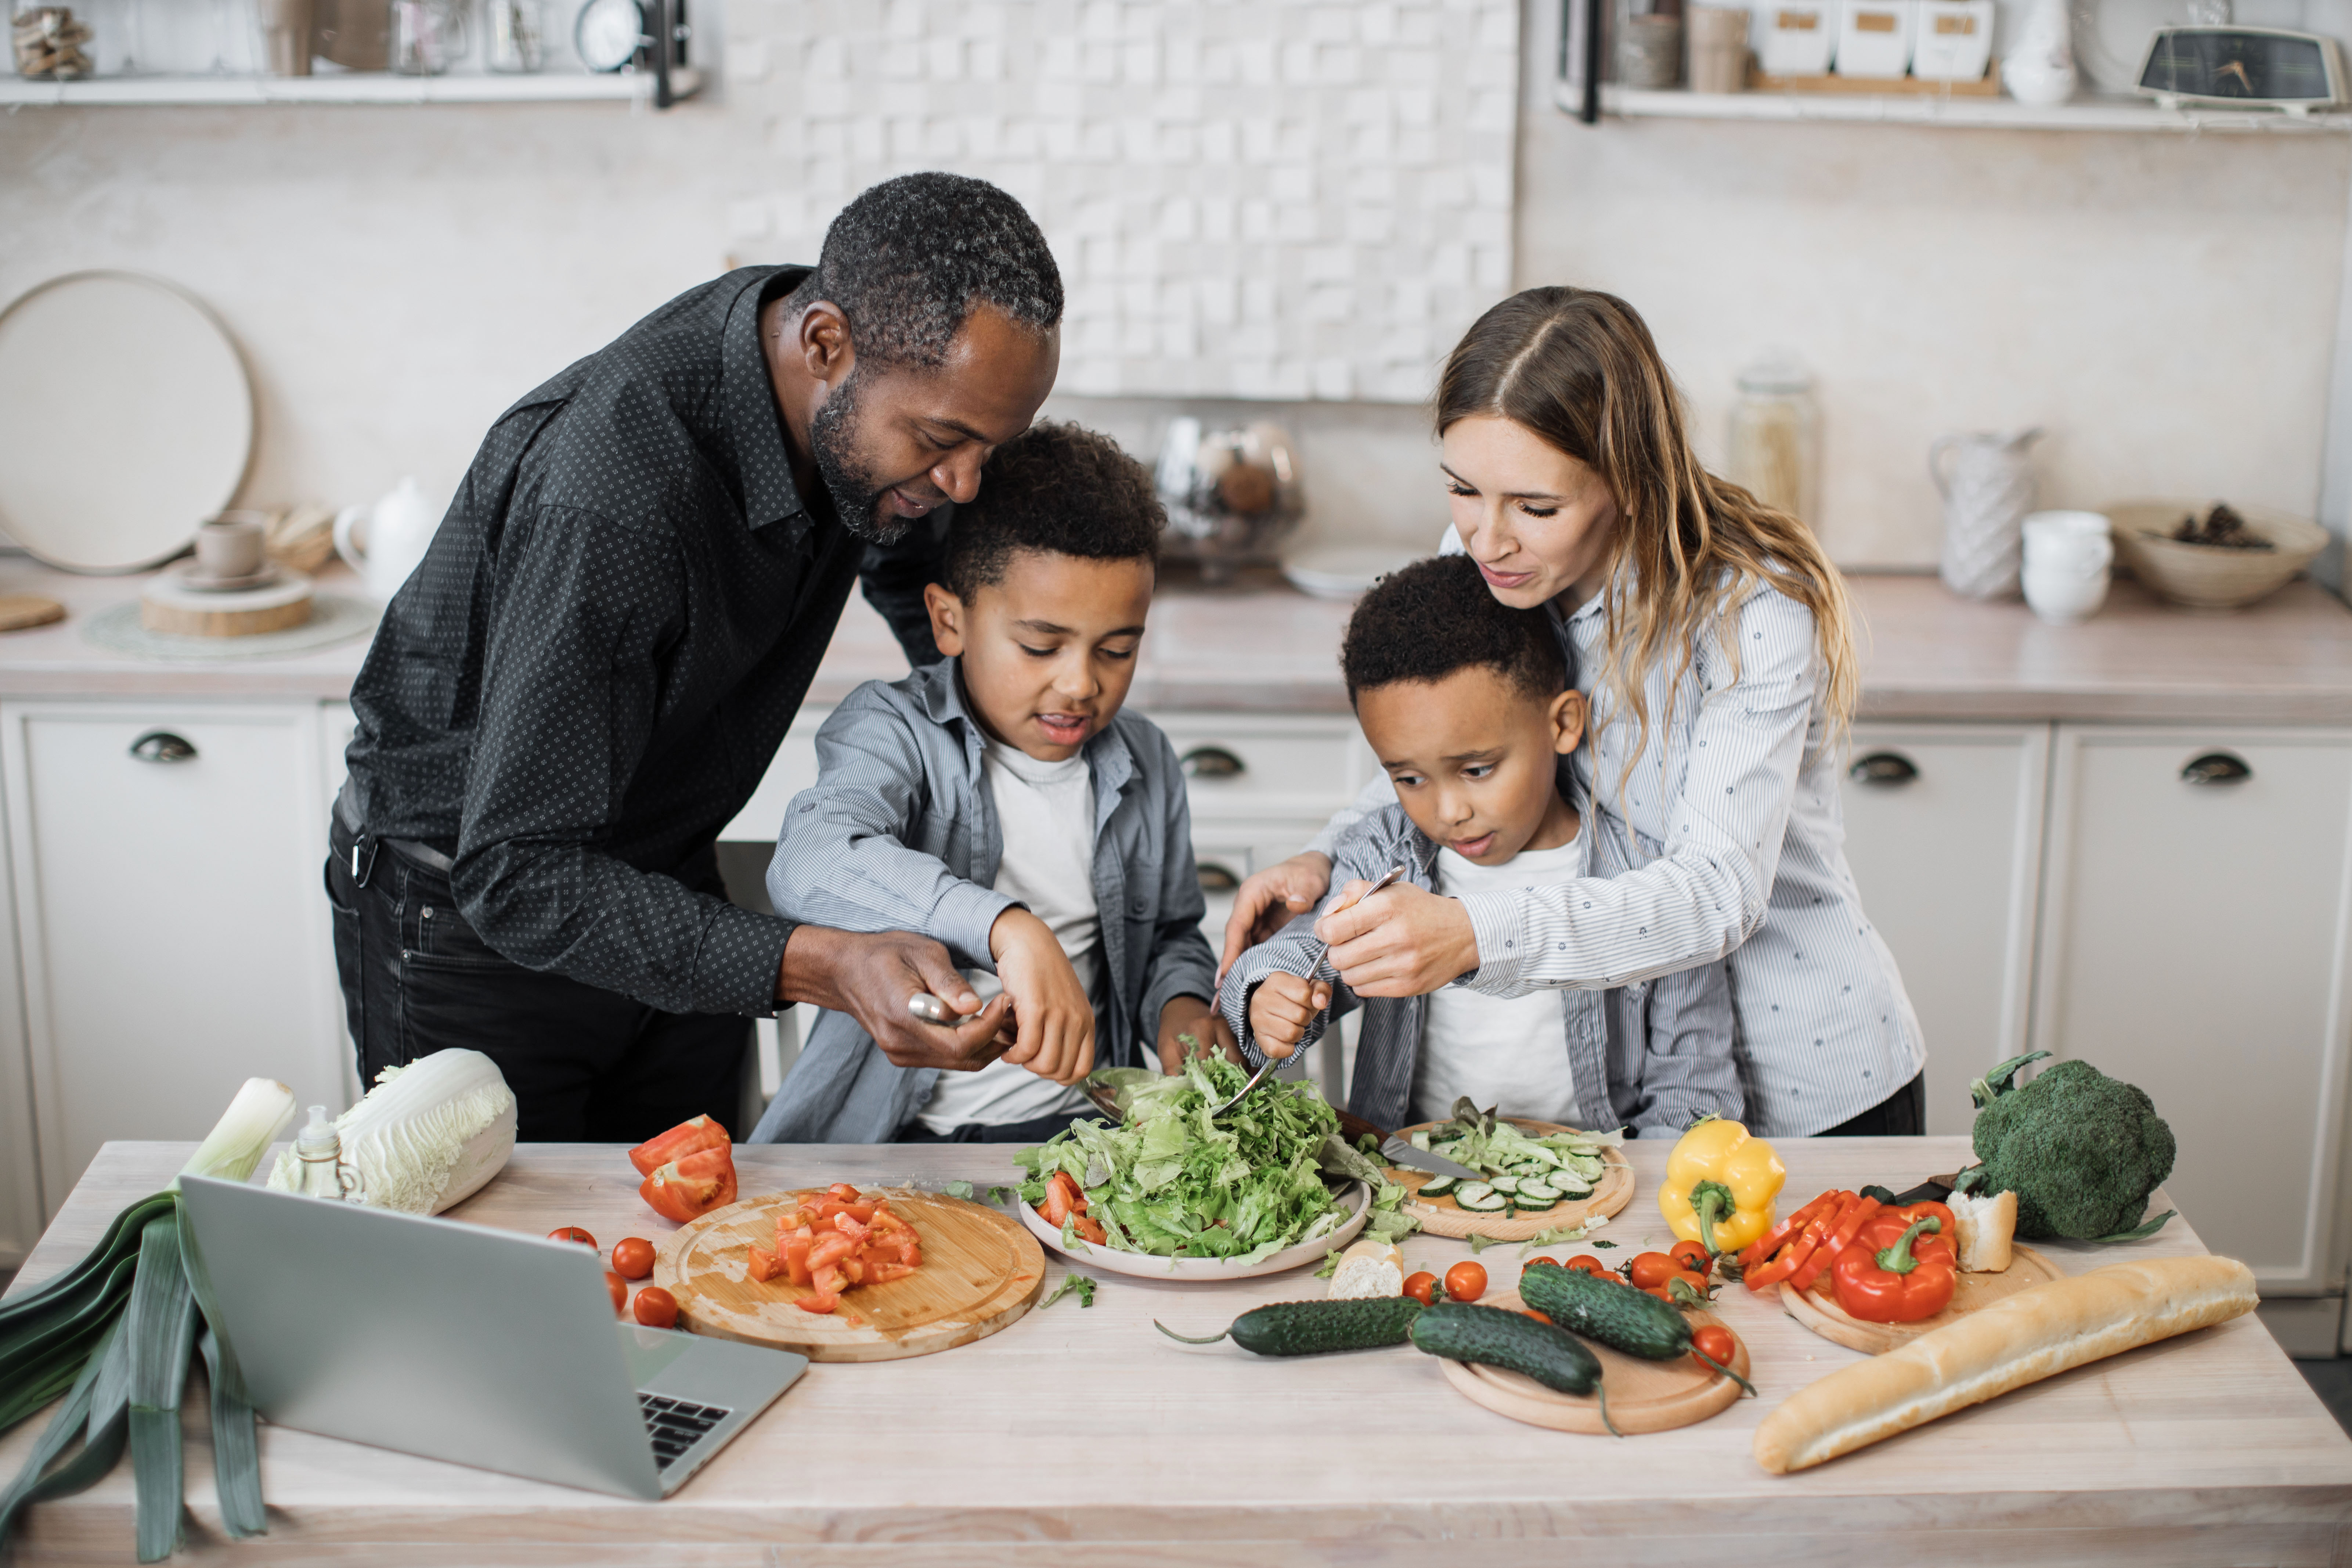 Les familles en situation d'insécurité alimentaire ont plus de problèmes de santé et donc des dépenses de santé plus élevée (Visuel Adobe Stock 556526360)